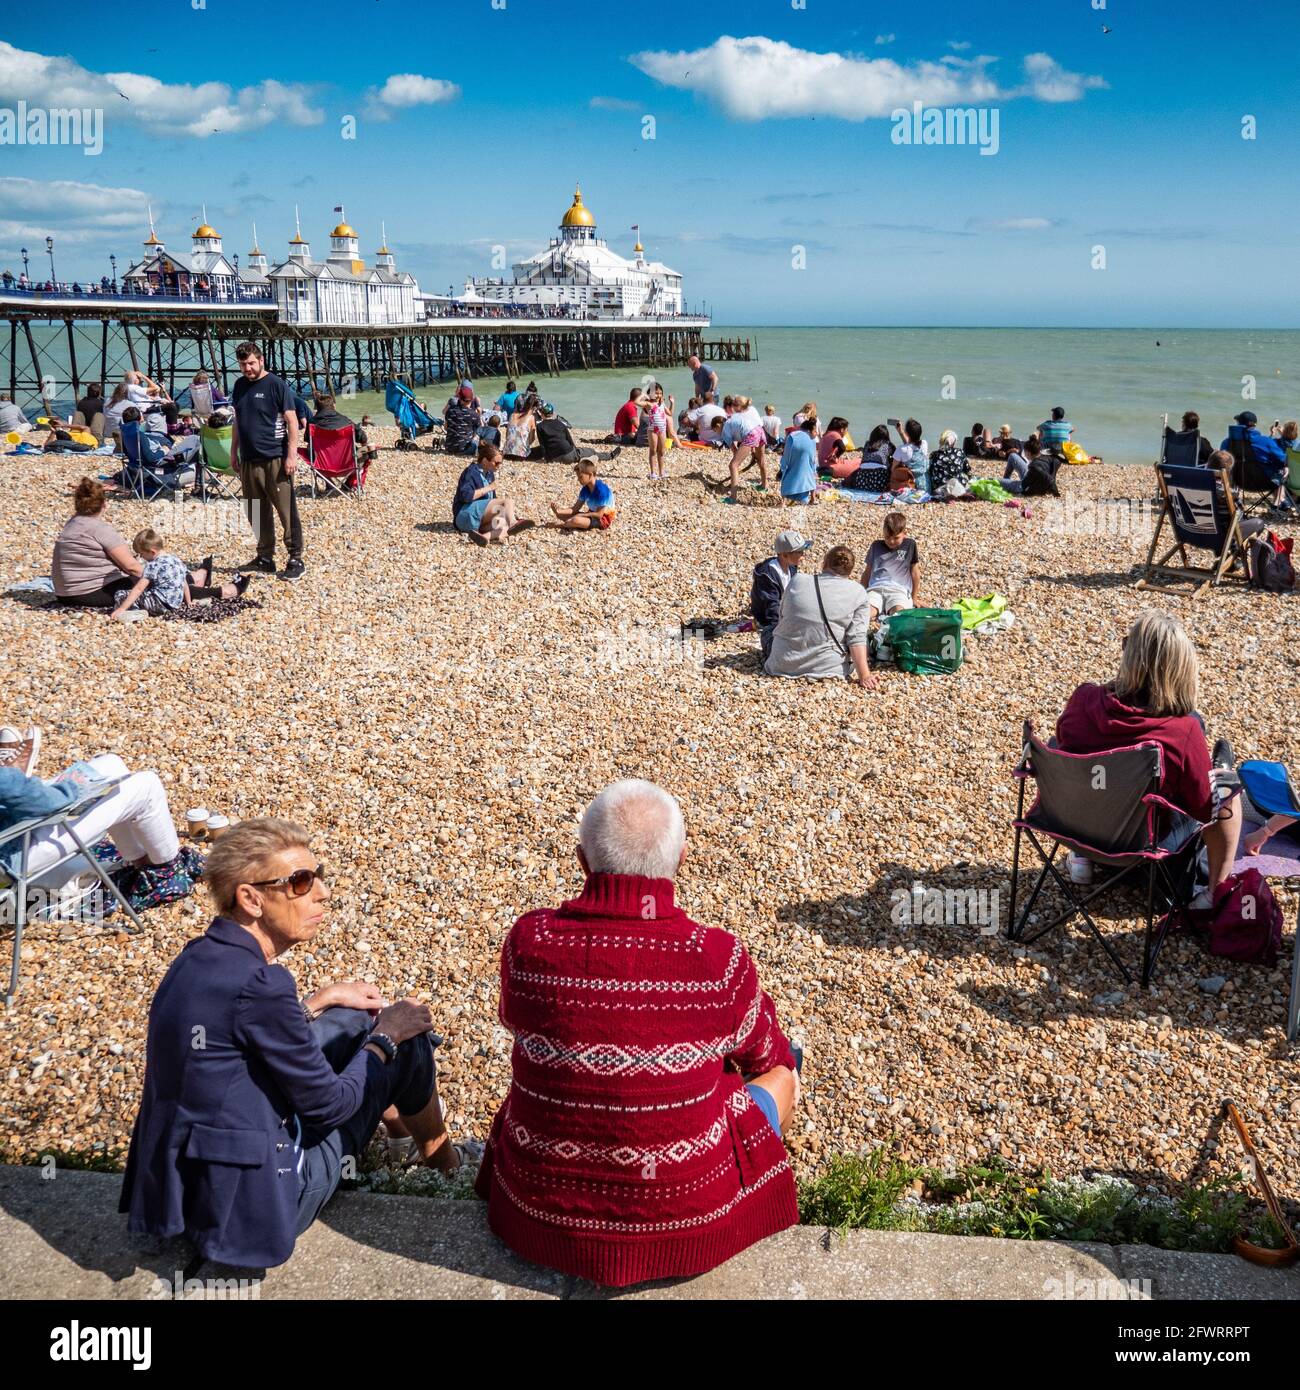 Eastbourne Beach and Pier, East Sussex, Angleterre. Une scène de plage à la hauteur de l'été anglais rempli de touristes appréciant le temps chaud. Banque D'Images